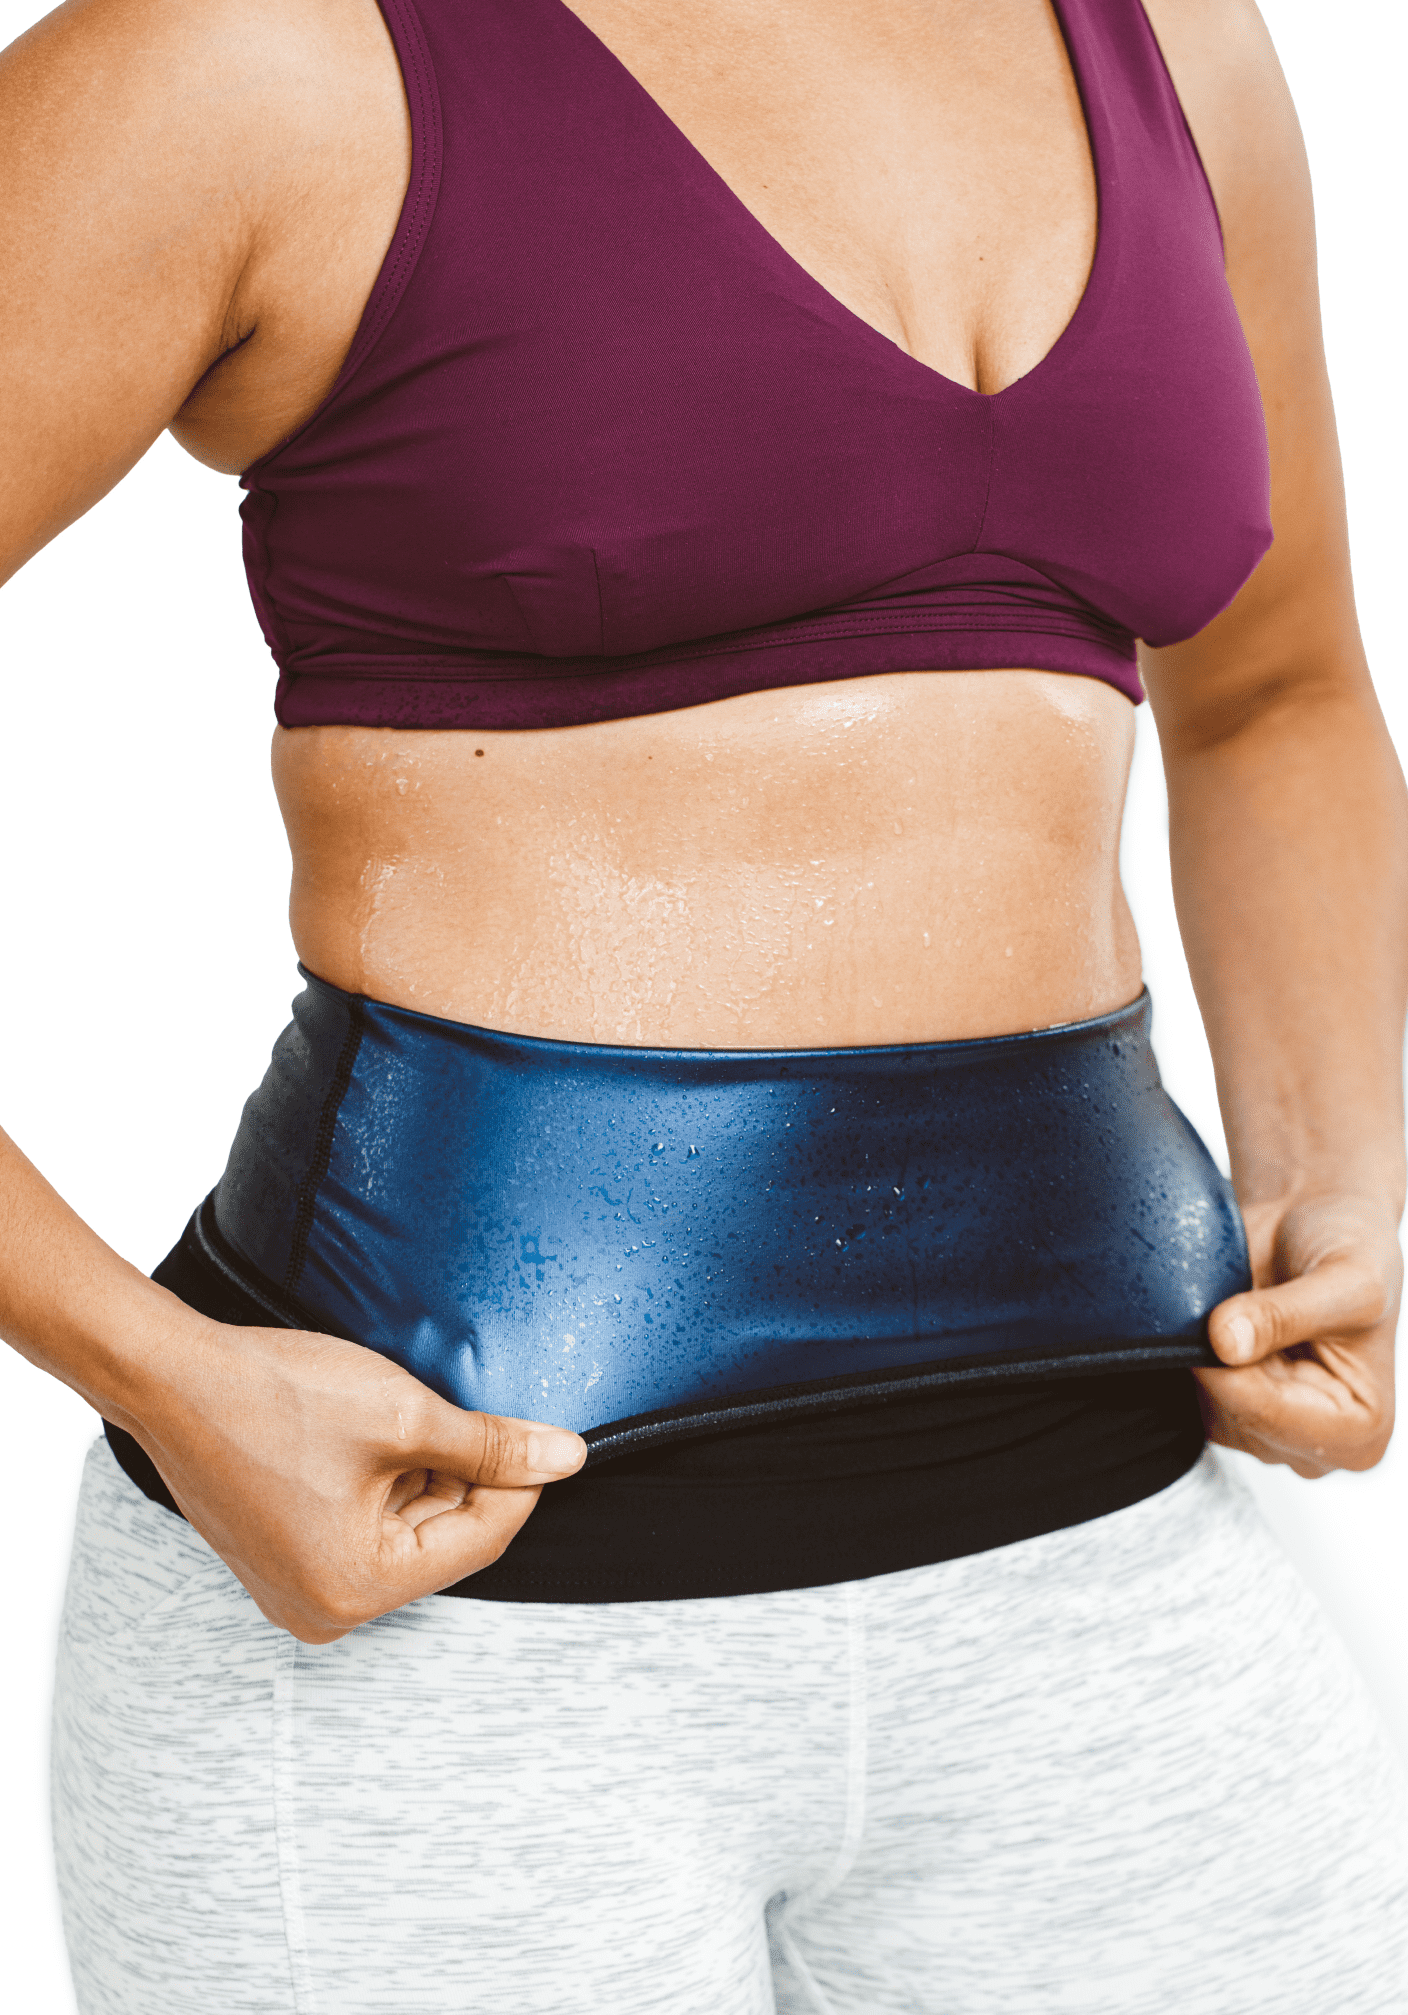 Neoprene Sweat Band Waist Trainer Women Men Lower Belly Fat Burn